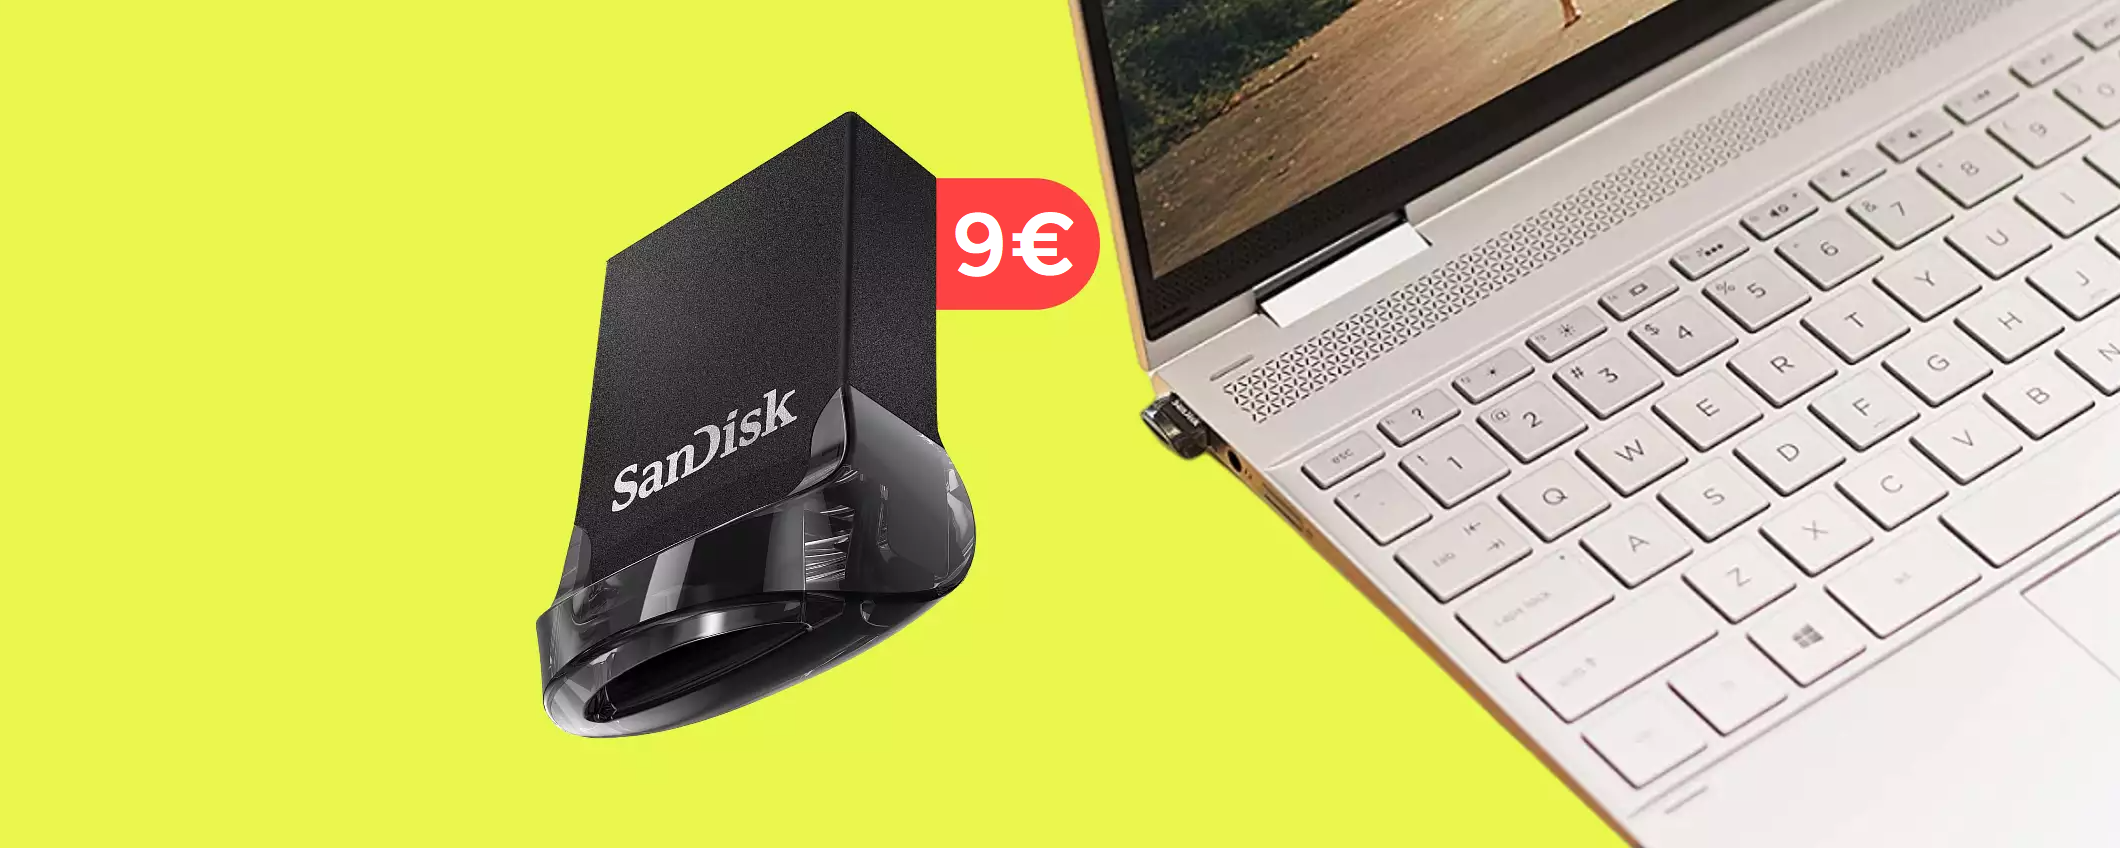 Chiavetta USB 64GB: con appena 9€ porti a casa una vera BOMBA